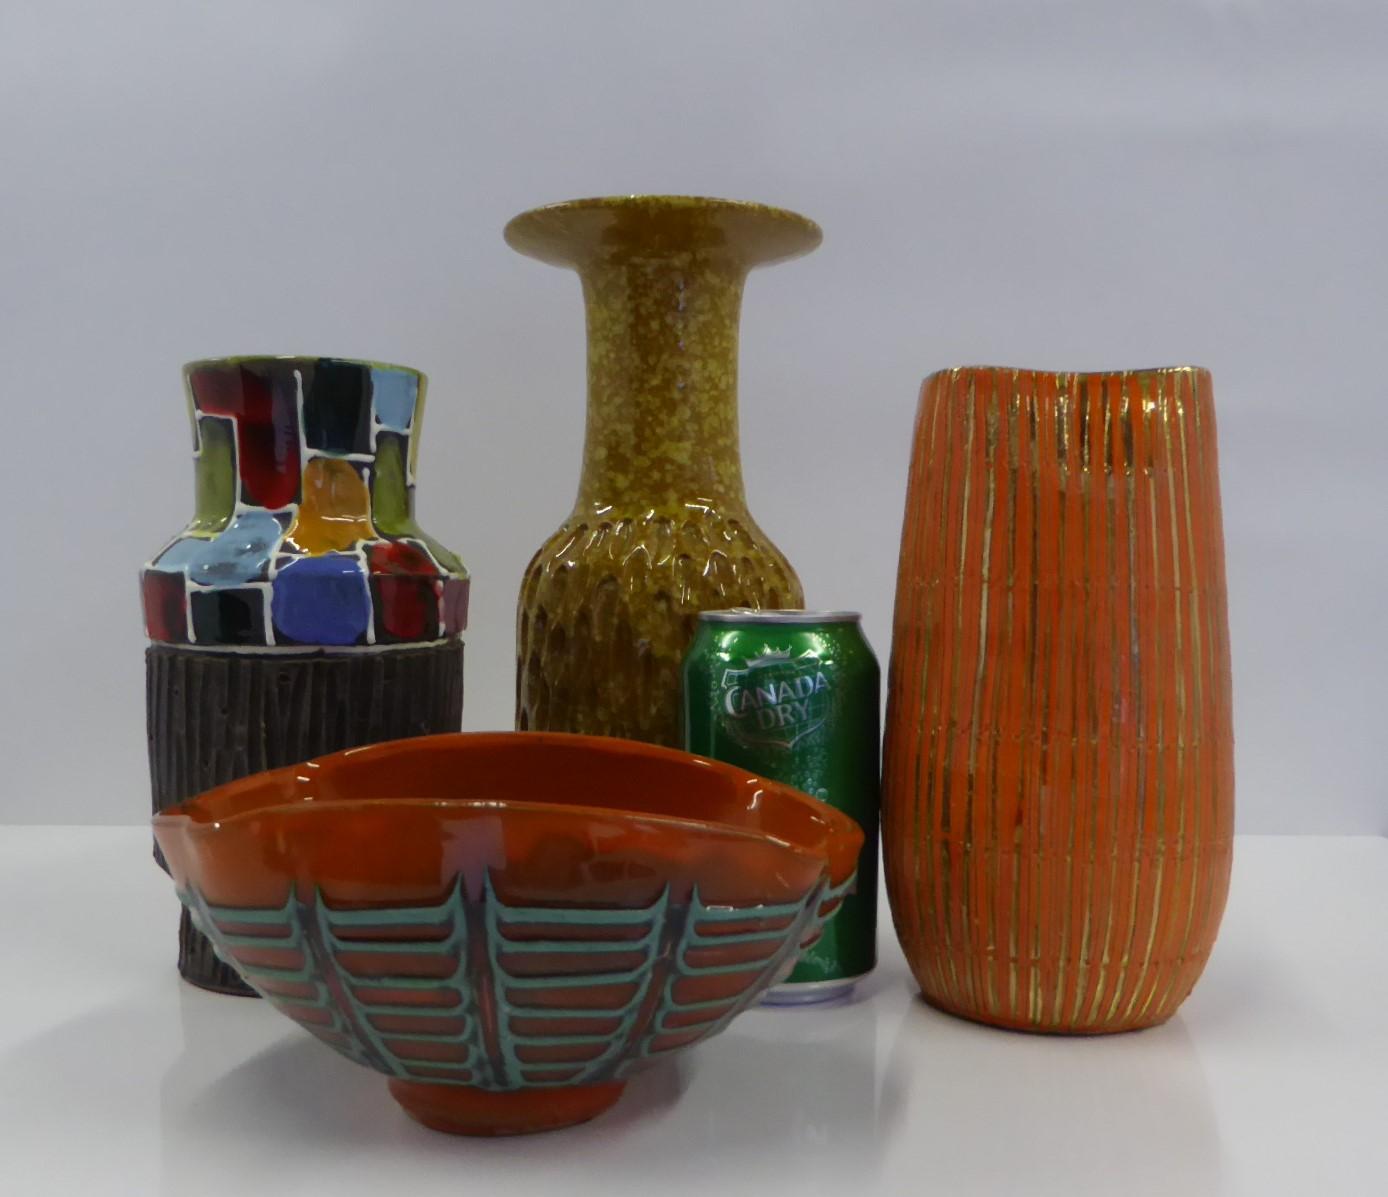 Aldo Londi Seta Series for Bitossi Modern Sgraffito Ceramic Vase, Italy, 1950s For Sale 3